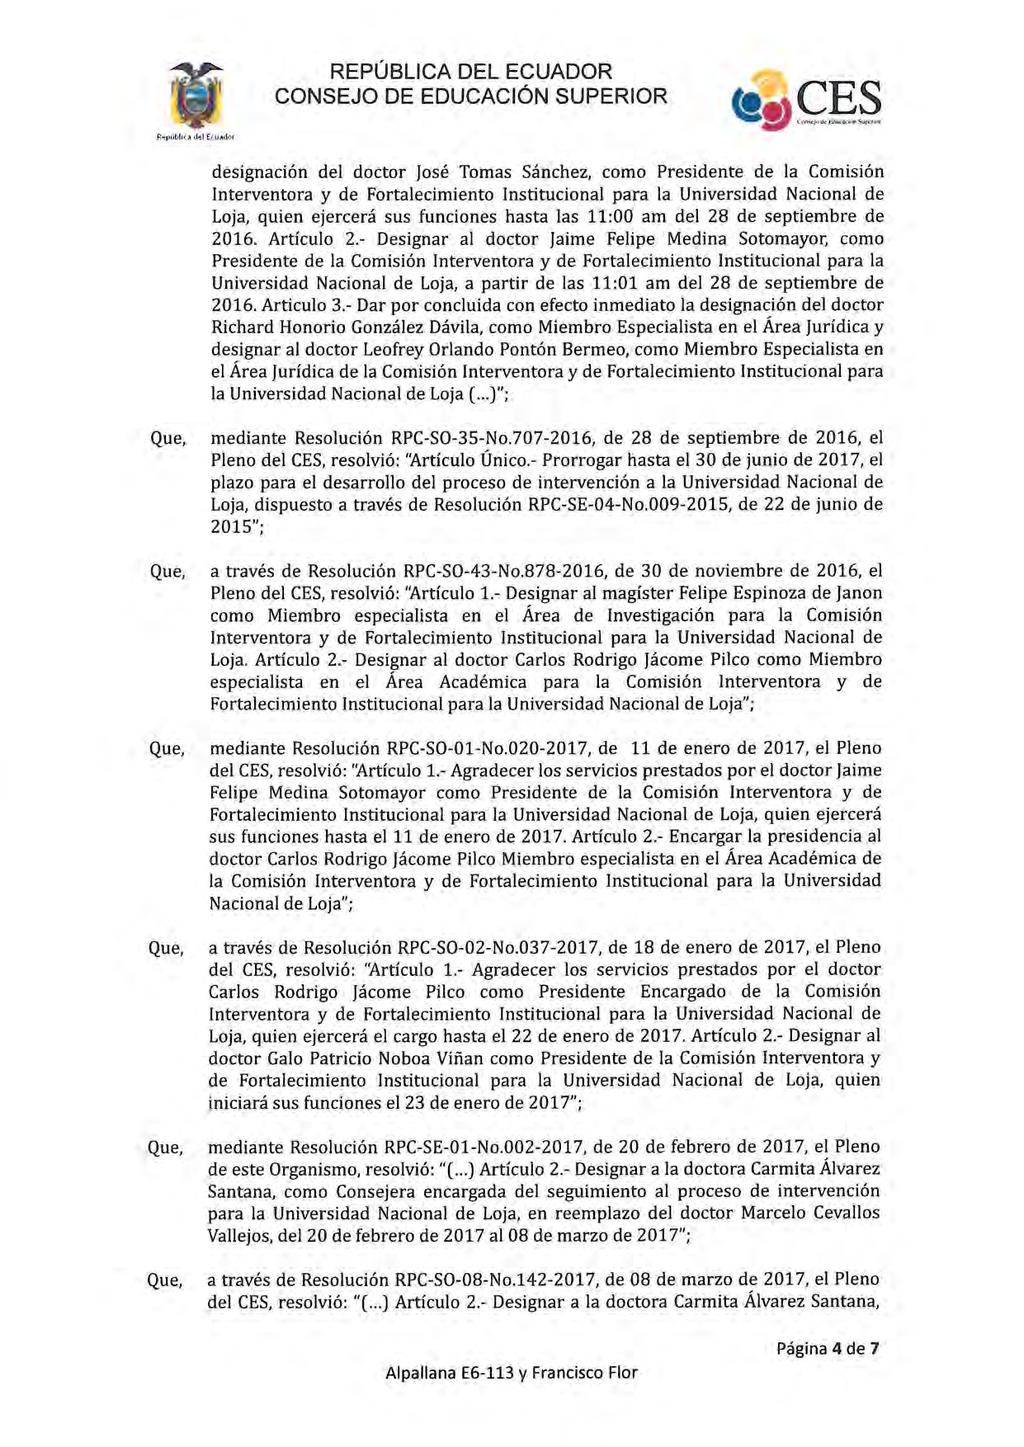 designación del doctor José Tomas Sánchez, como Presidente de la Comisión Loja, quien ejercerá sus funciones hasta las 11:00 am del 28 de septiembre de 2016. Artículo 2.